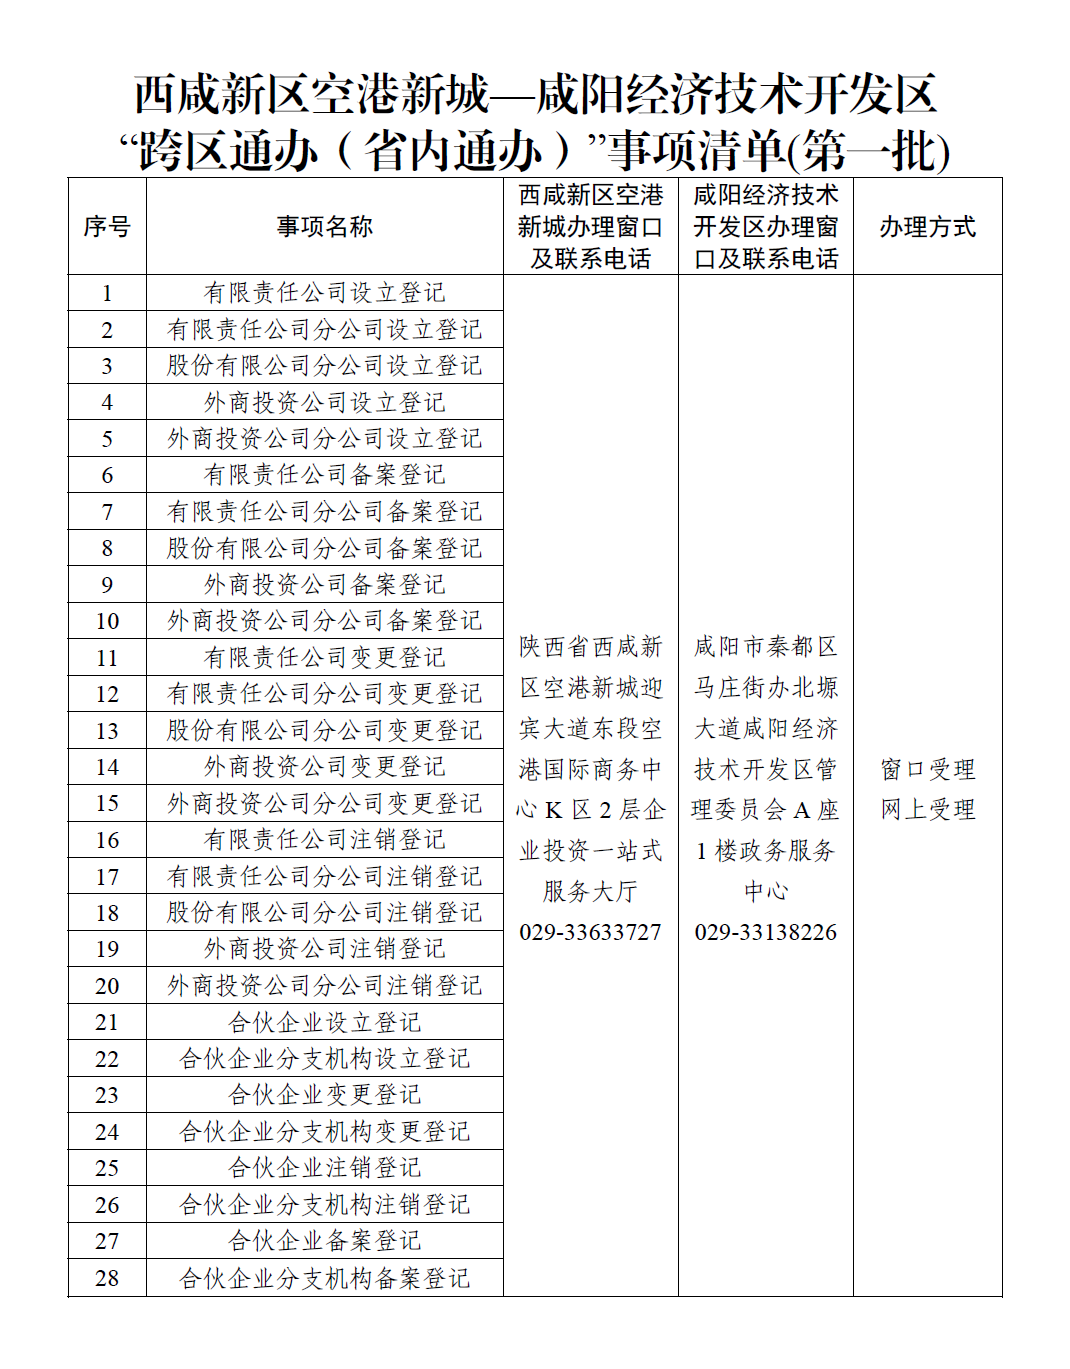 西咸新区空港新城和咸阳经开区联合推出28项政务服务事项“跨区通办”